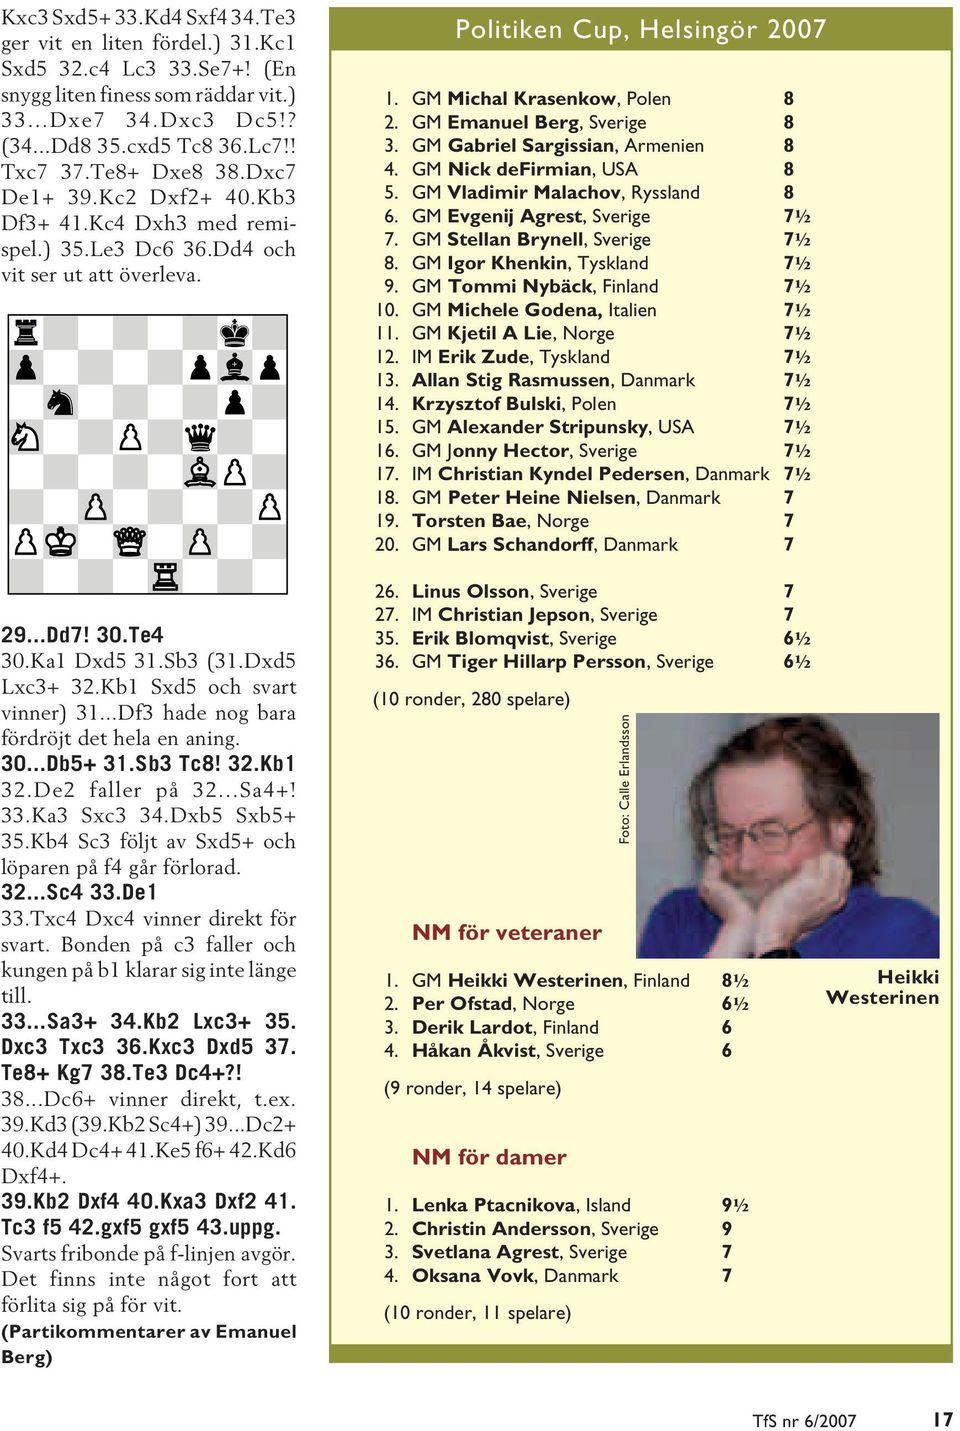 Kb1 Sxd5 och svart vinner) 31...Df3 hade nog bara fördröjt det hela en aning. 30...Db5+ 31.Sb3 Tc8! 32.Kb1 32.De2 faller på 32...Sa4+! 33.Ka3 Sxc3 34.Dxb5 Sxb5+ 35.